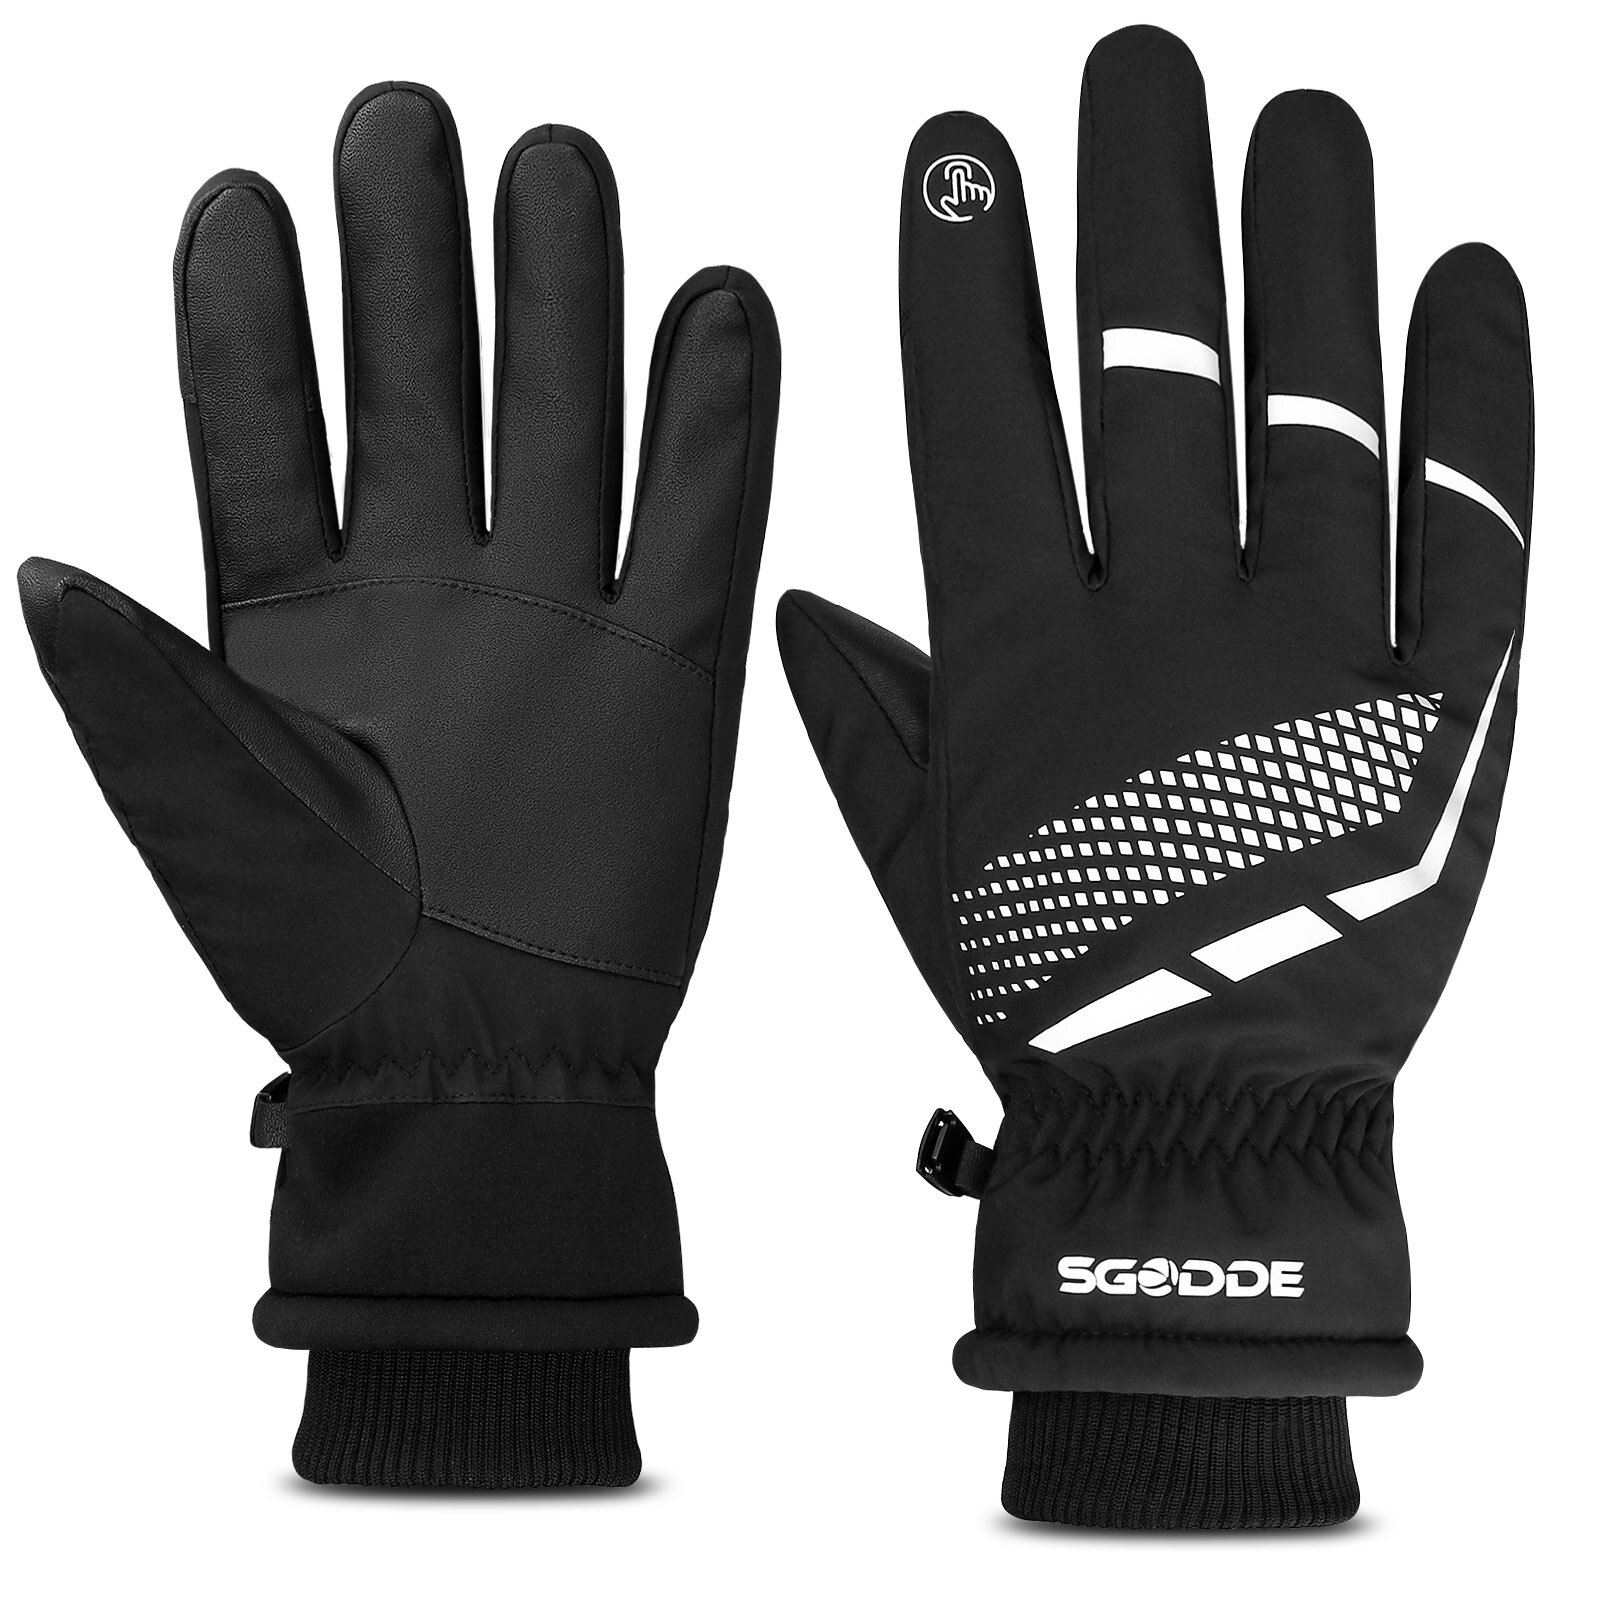 SGODDE Touchscreen Handschoenen Antislip Thermisch Sport Winter Warm Ski?n Dikker Fleece voering Paa